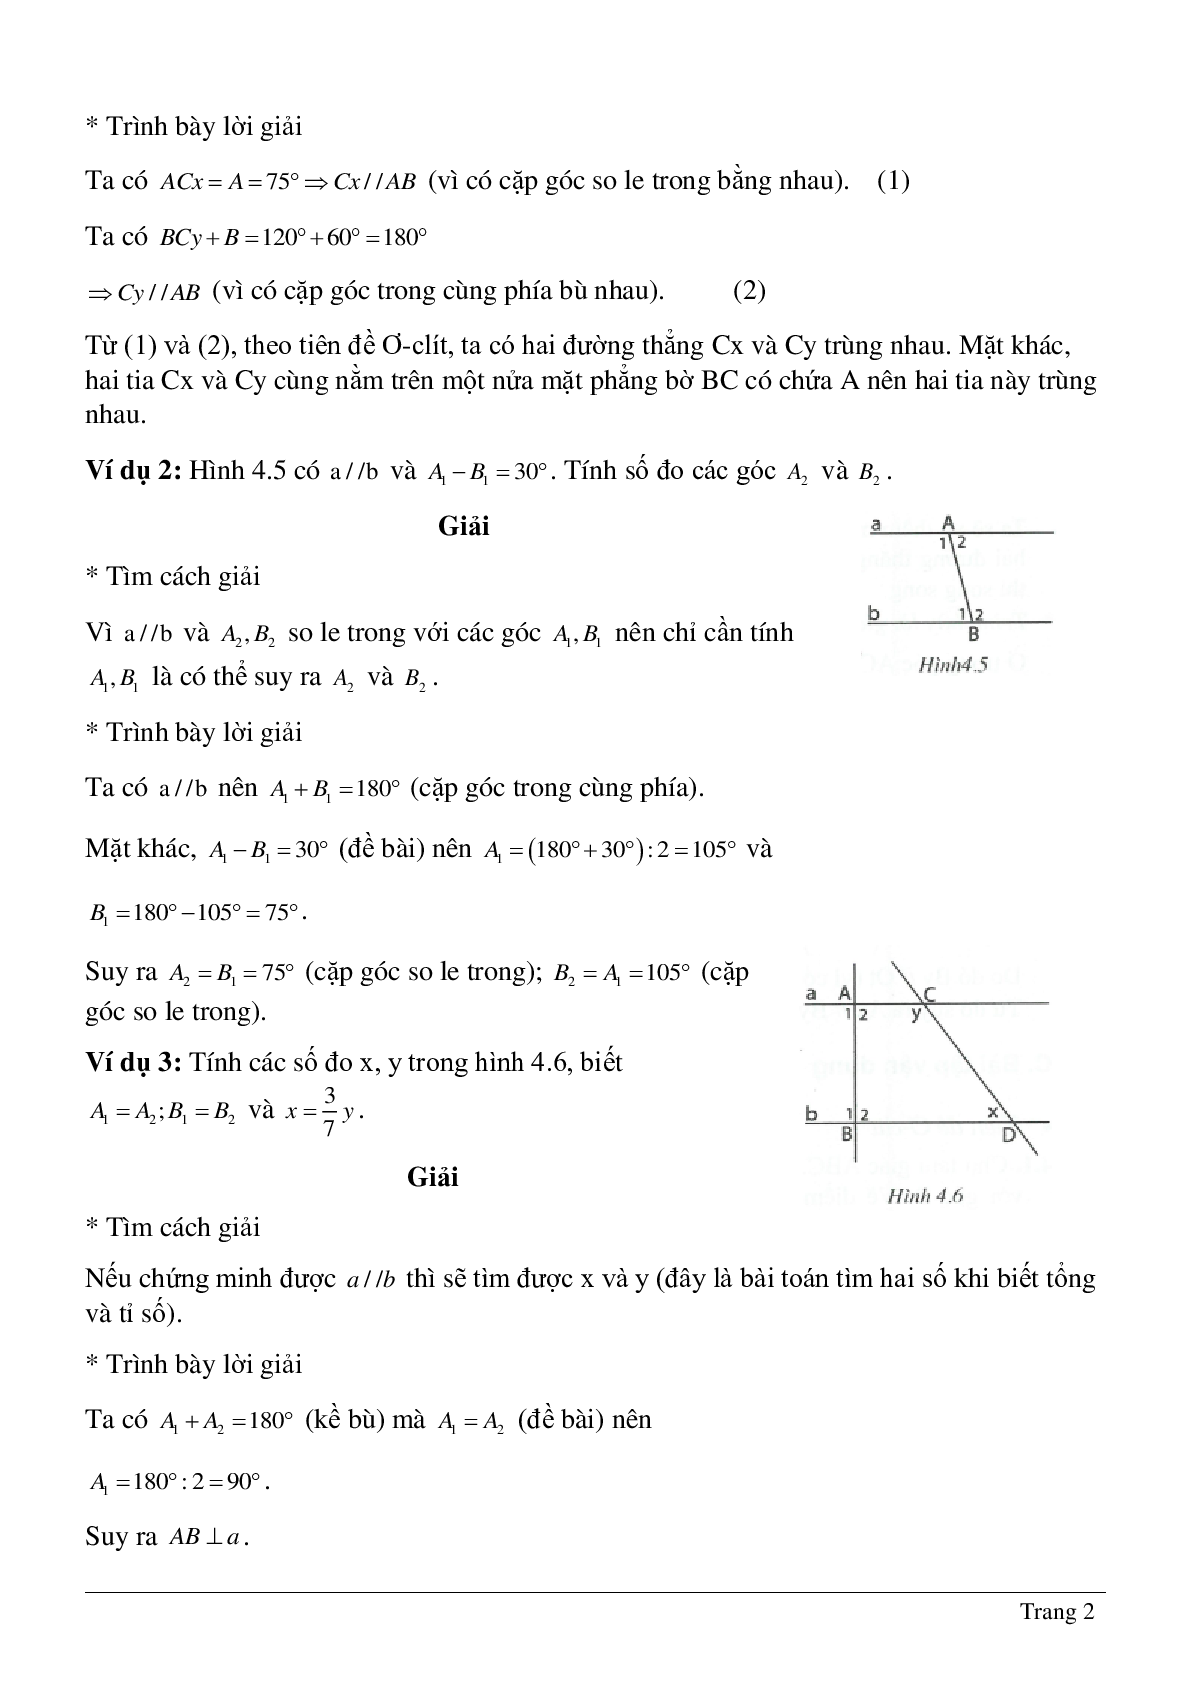 Phương pháp giải và bài tập về Tiên đề Ơ-clit - Tính chất của hai đường thẳng song song có lời giải (trang 2)